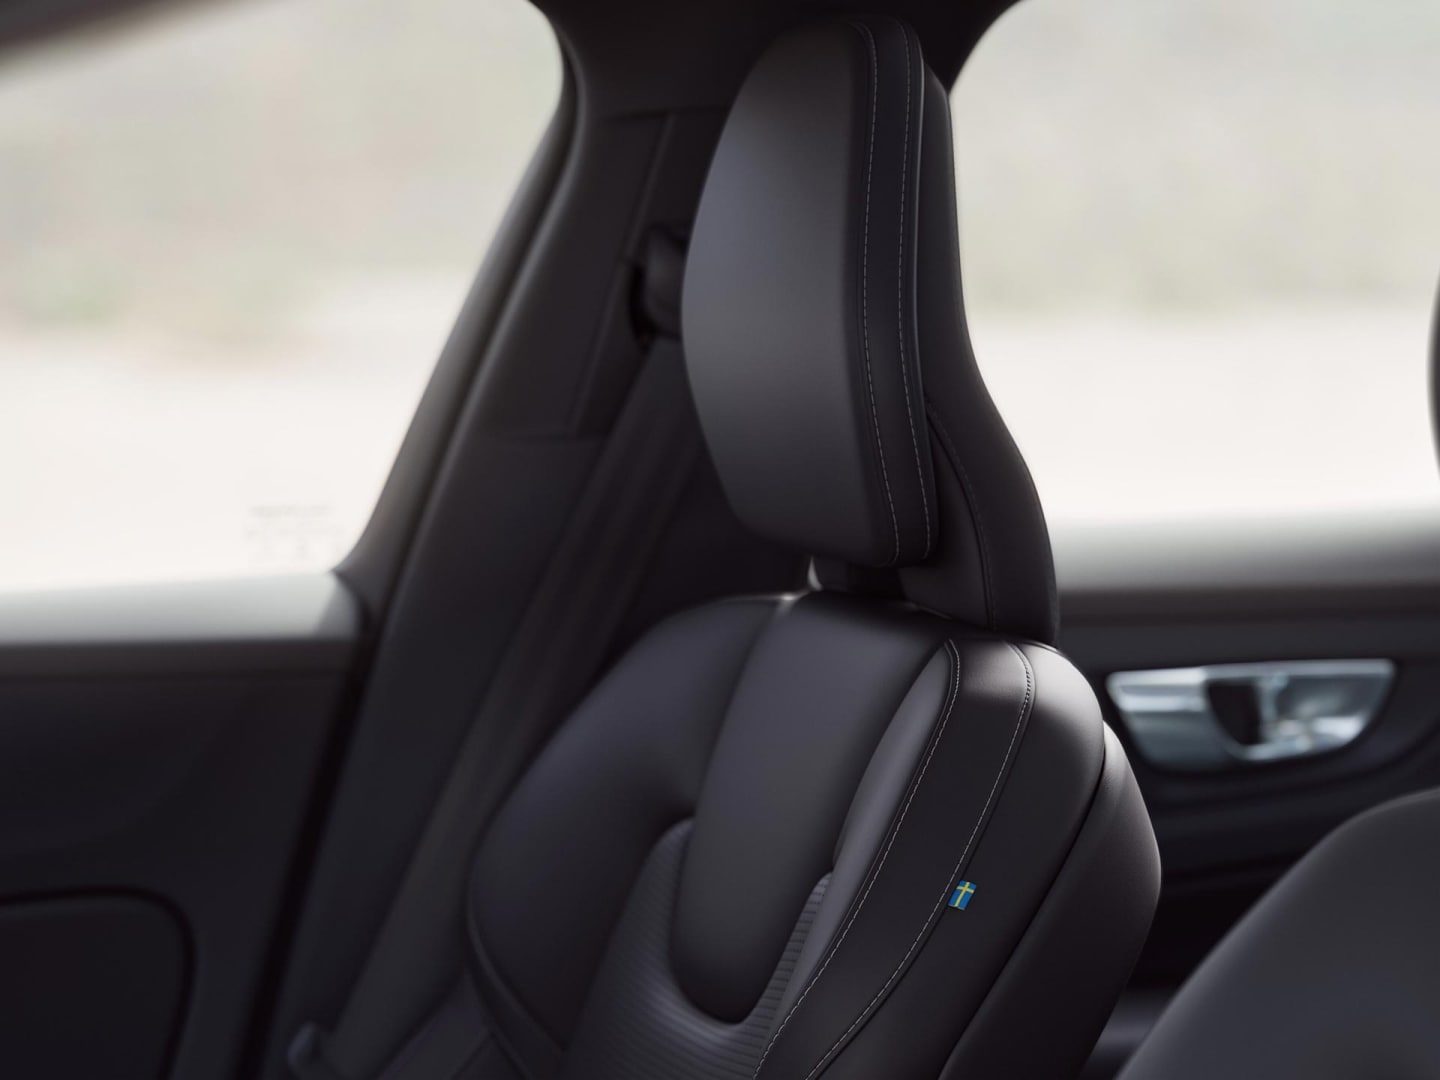 Τα καθίσματα του συνοδηγού και του οδηγού από αεριζόμενο δέρμα Nappa σε απόχρωση Charcoal, στο Volvo V60 plug-in hybrid.